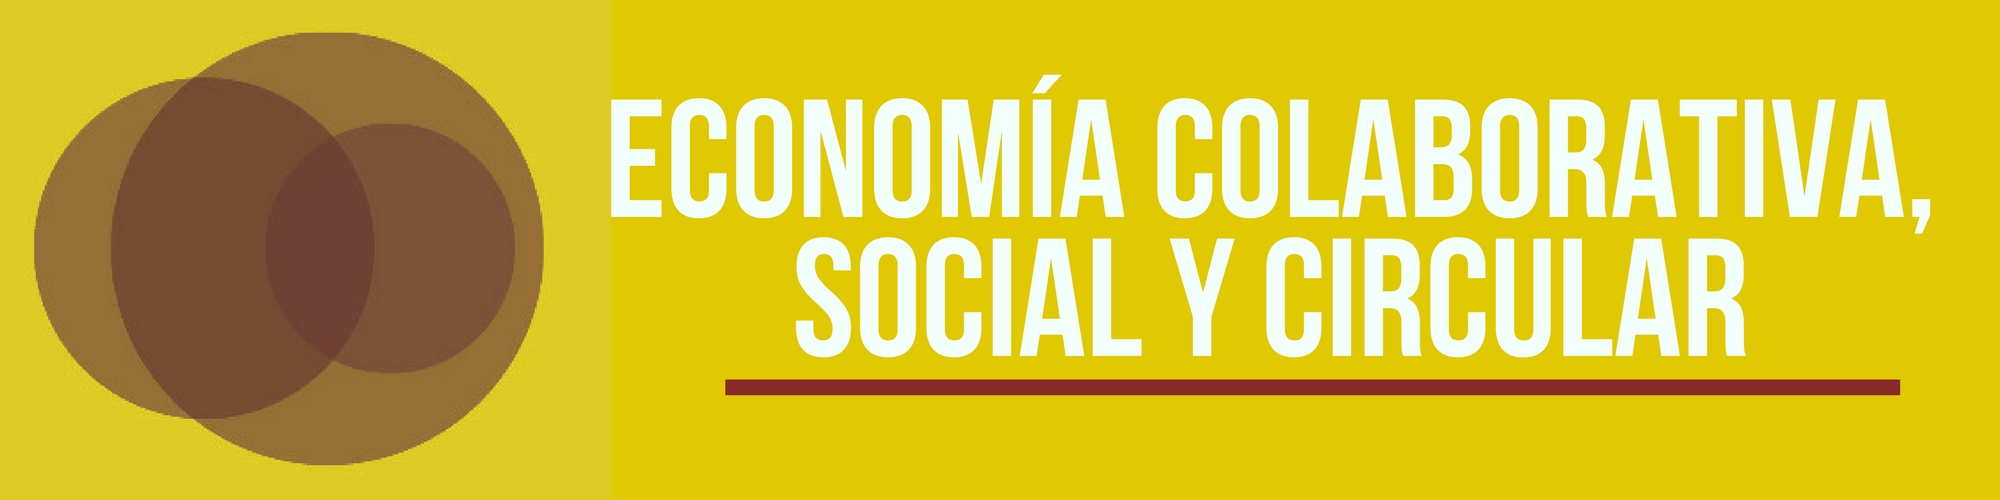 Economa colaborativa, social y circular[;;;][;;;]